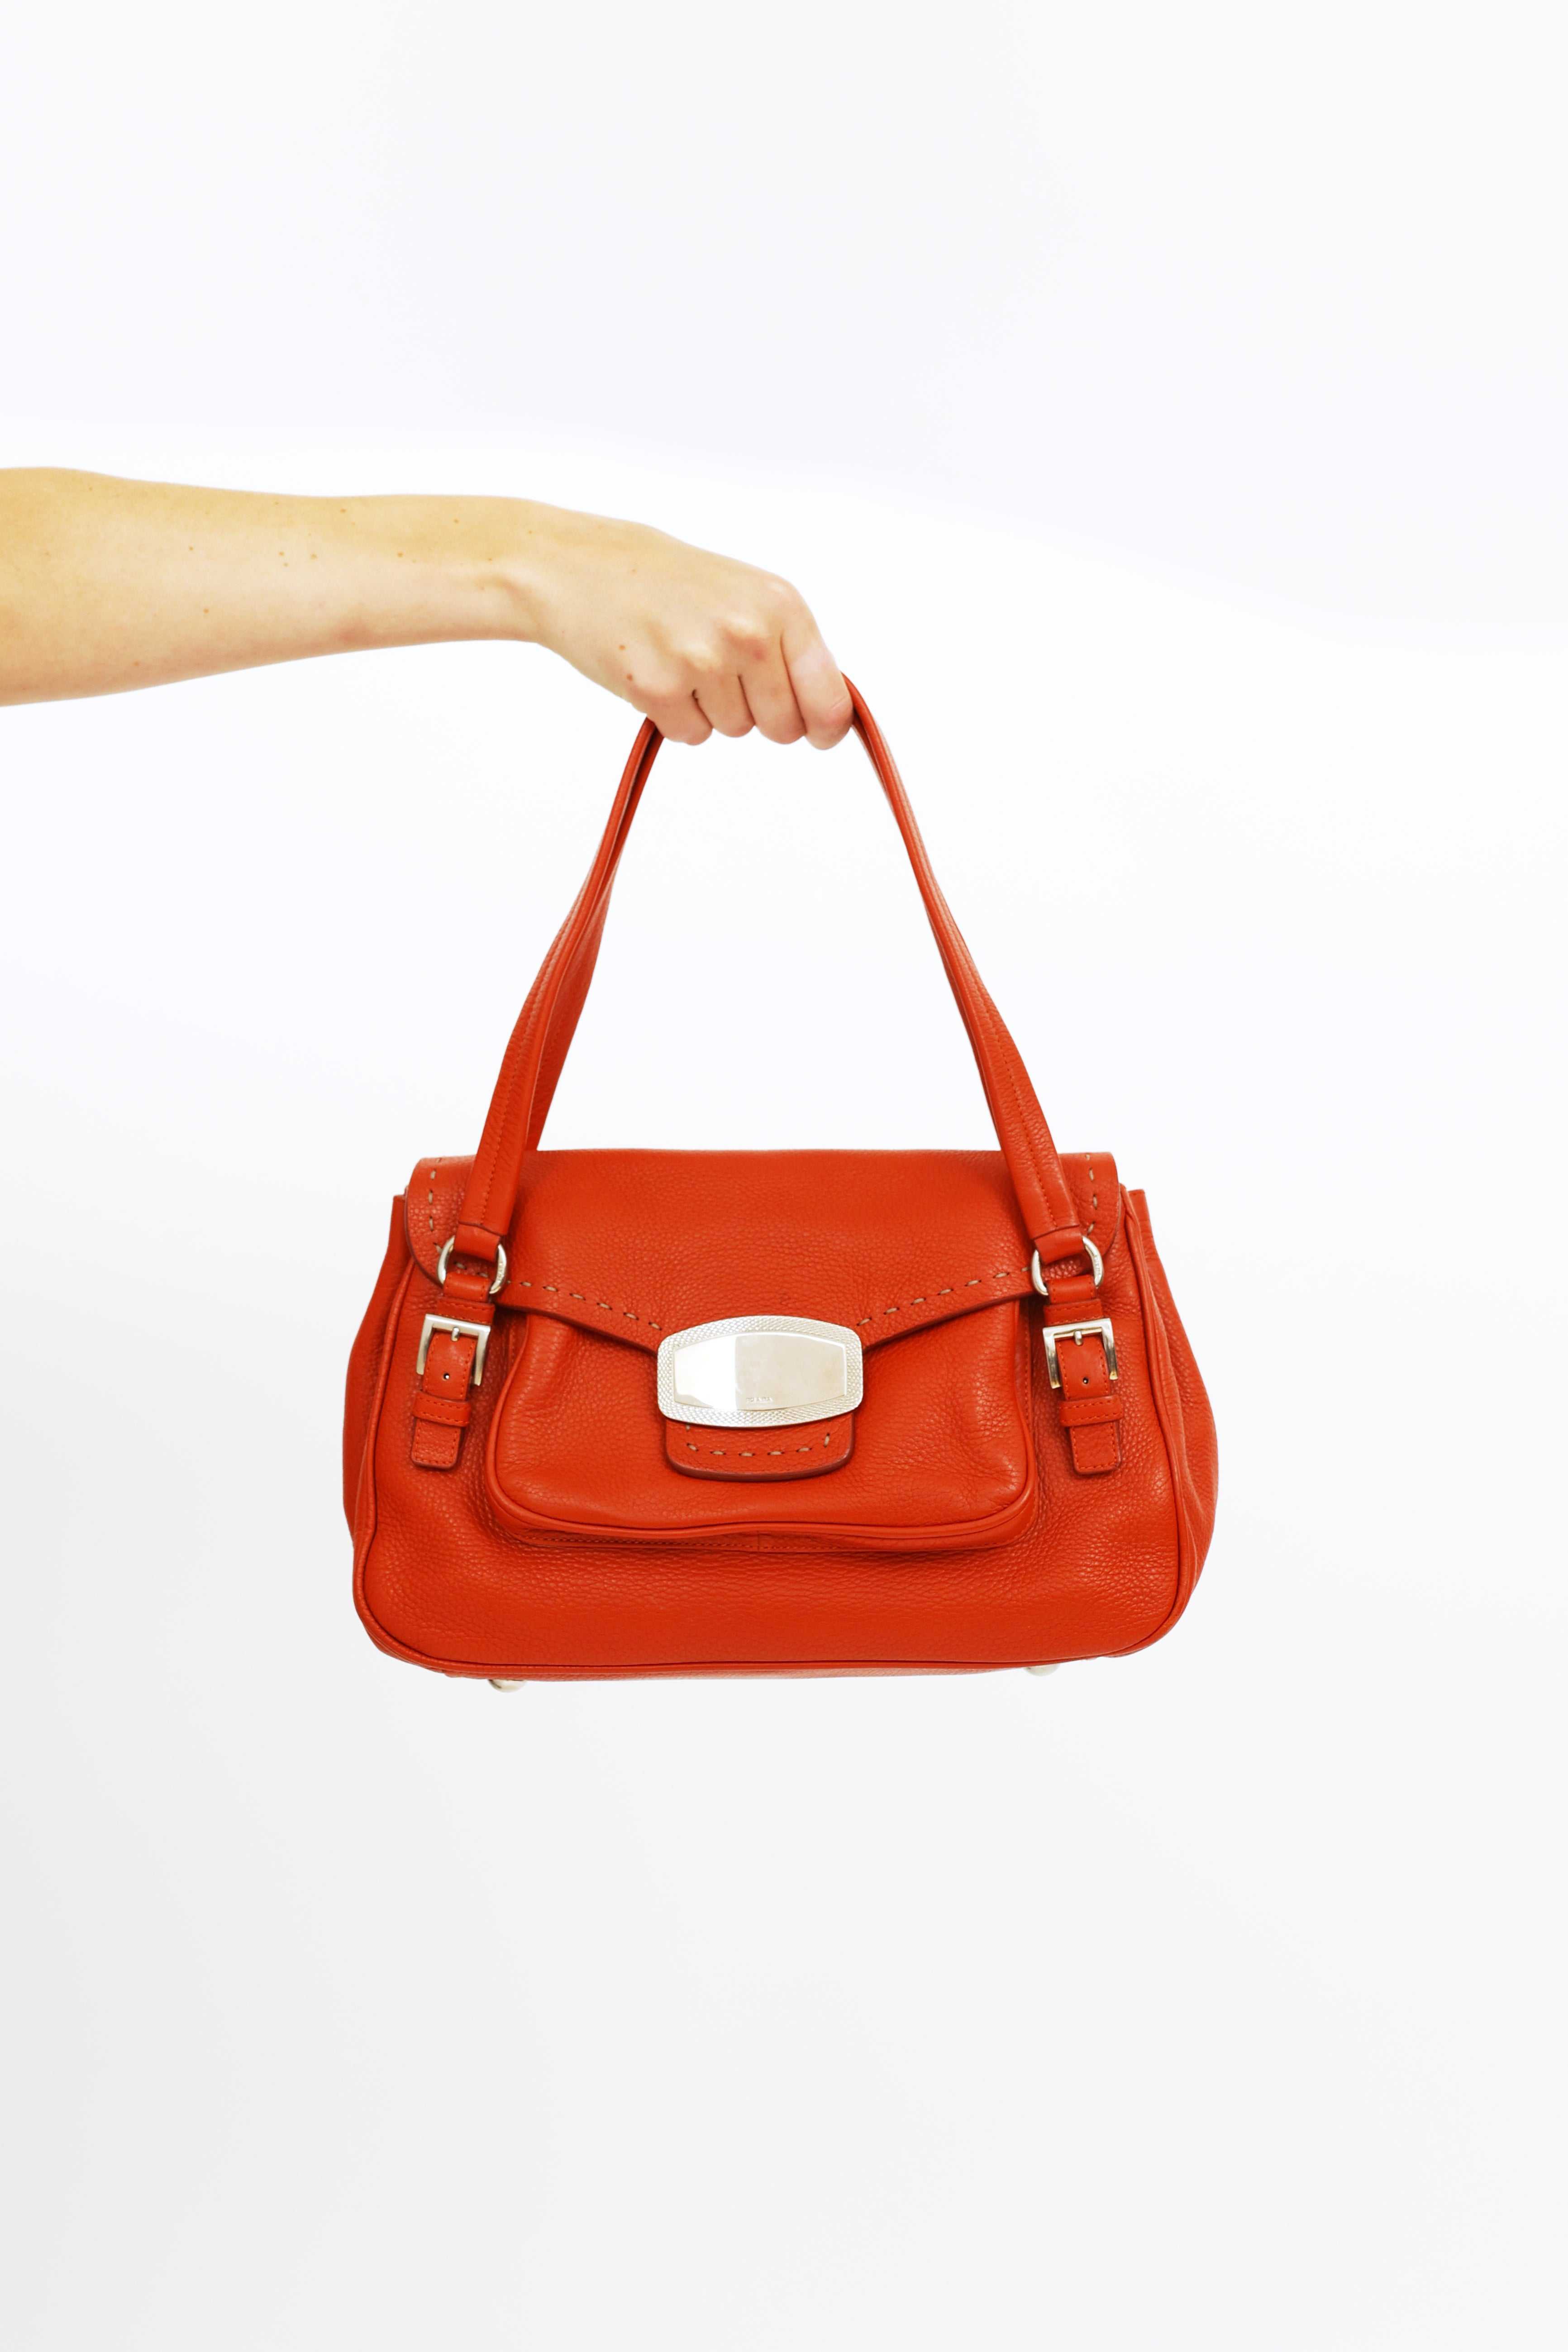 Prada, Orange Leather Shoulder Bag